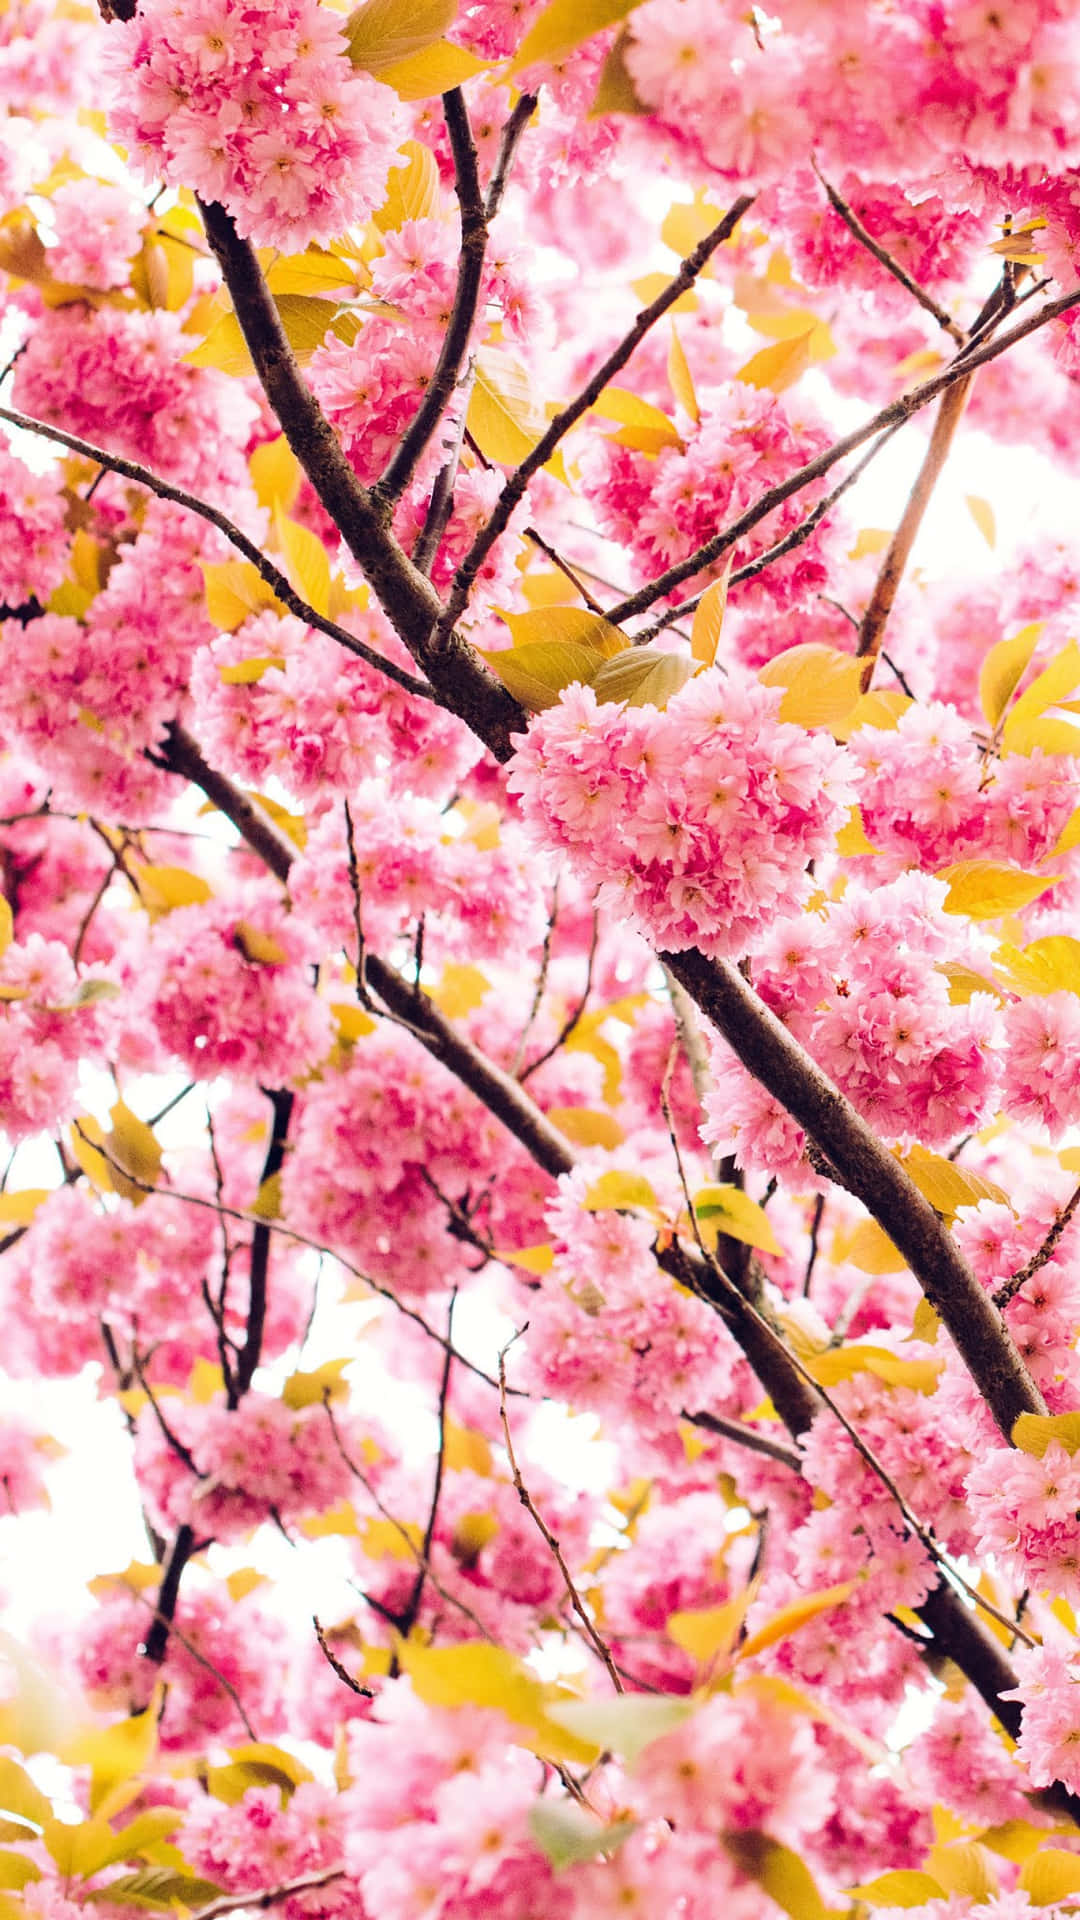 Experimentea Beleza De Uma Nova Temporada De Primavera Com Estas Adoráveis Cerejeiras Cor-de-rosa Como Papel De Parede Para O Seu Computador Ou Celular. Papel de Parede